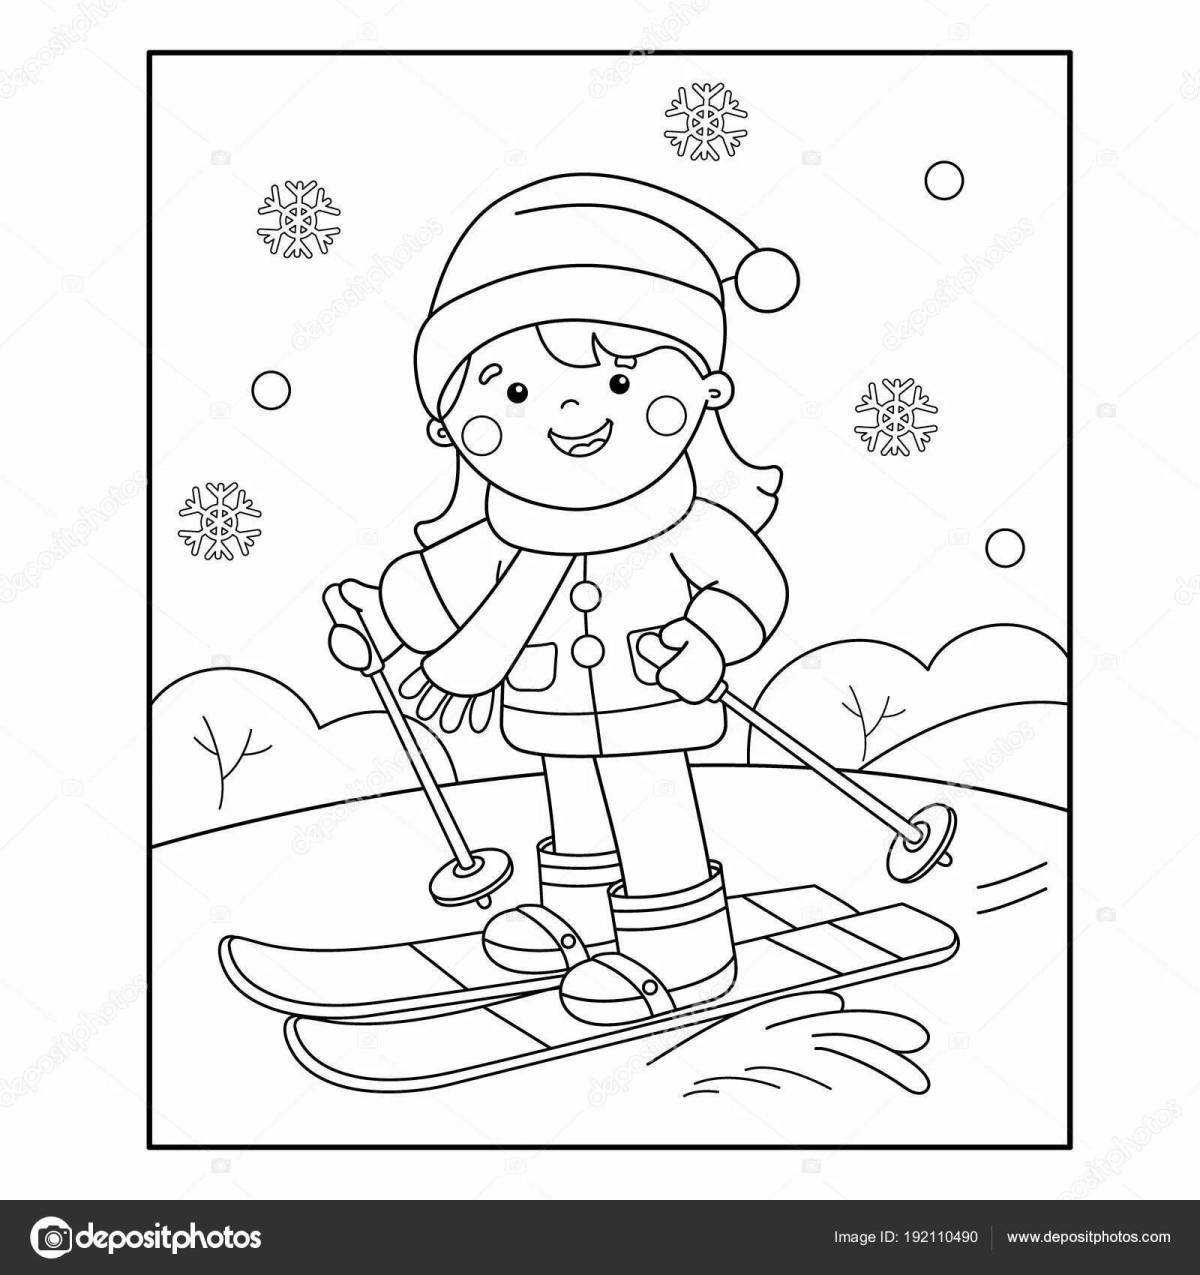 Toddler skier #5